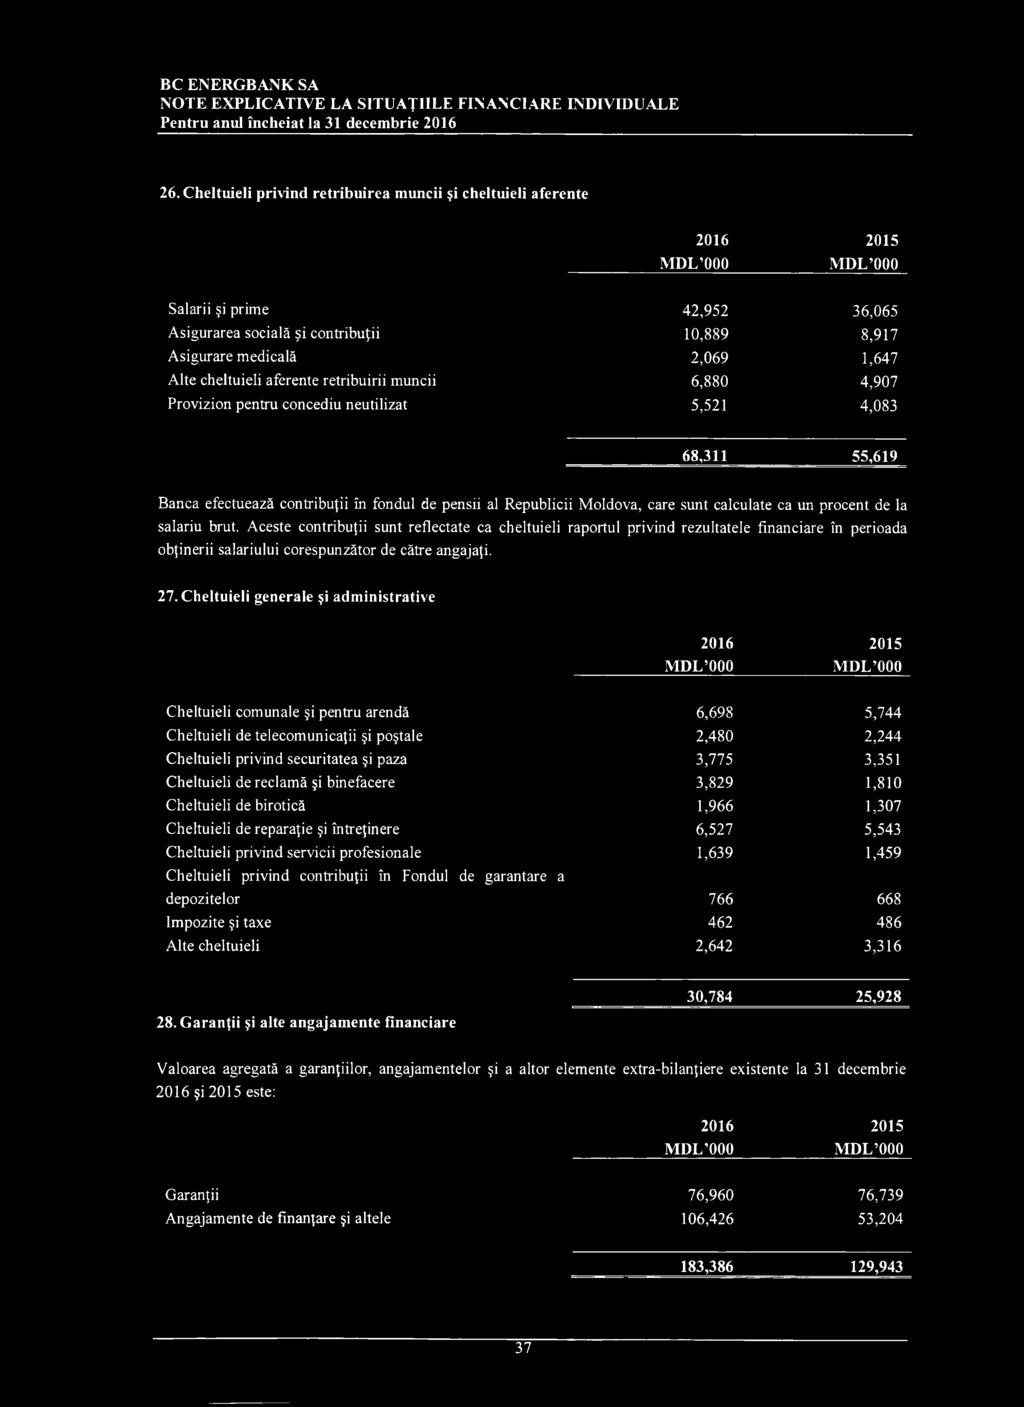 aferente retribuirii muncii 6,880 4,907 Provizion pentru concediu neutilizat 5,521 4,083 68,311 55,619 Banca efectuează contribuţii în fondul de pensii al Republicii Moldova, care sunt calculate ca